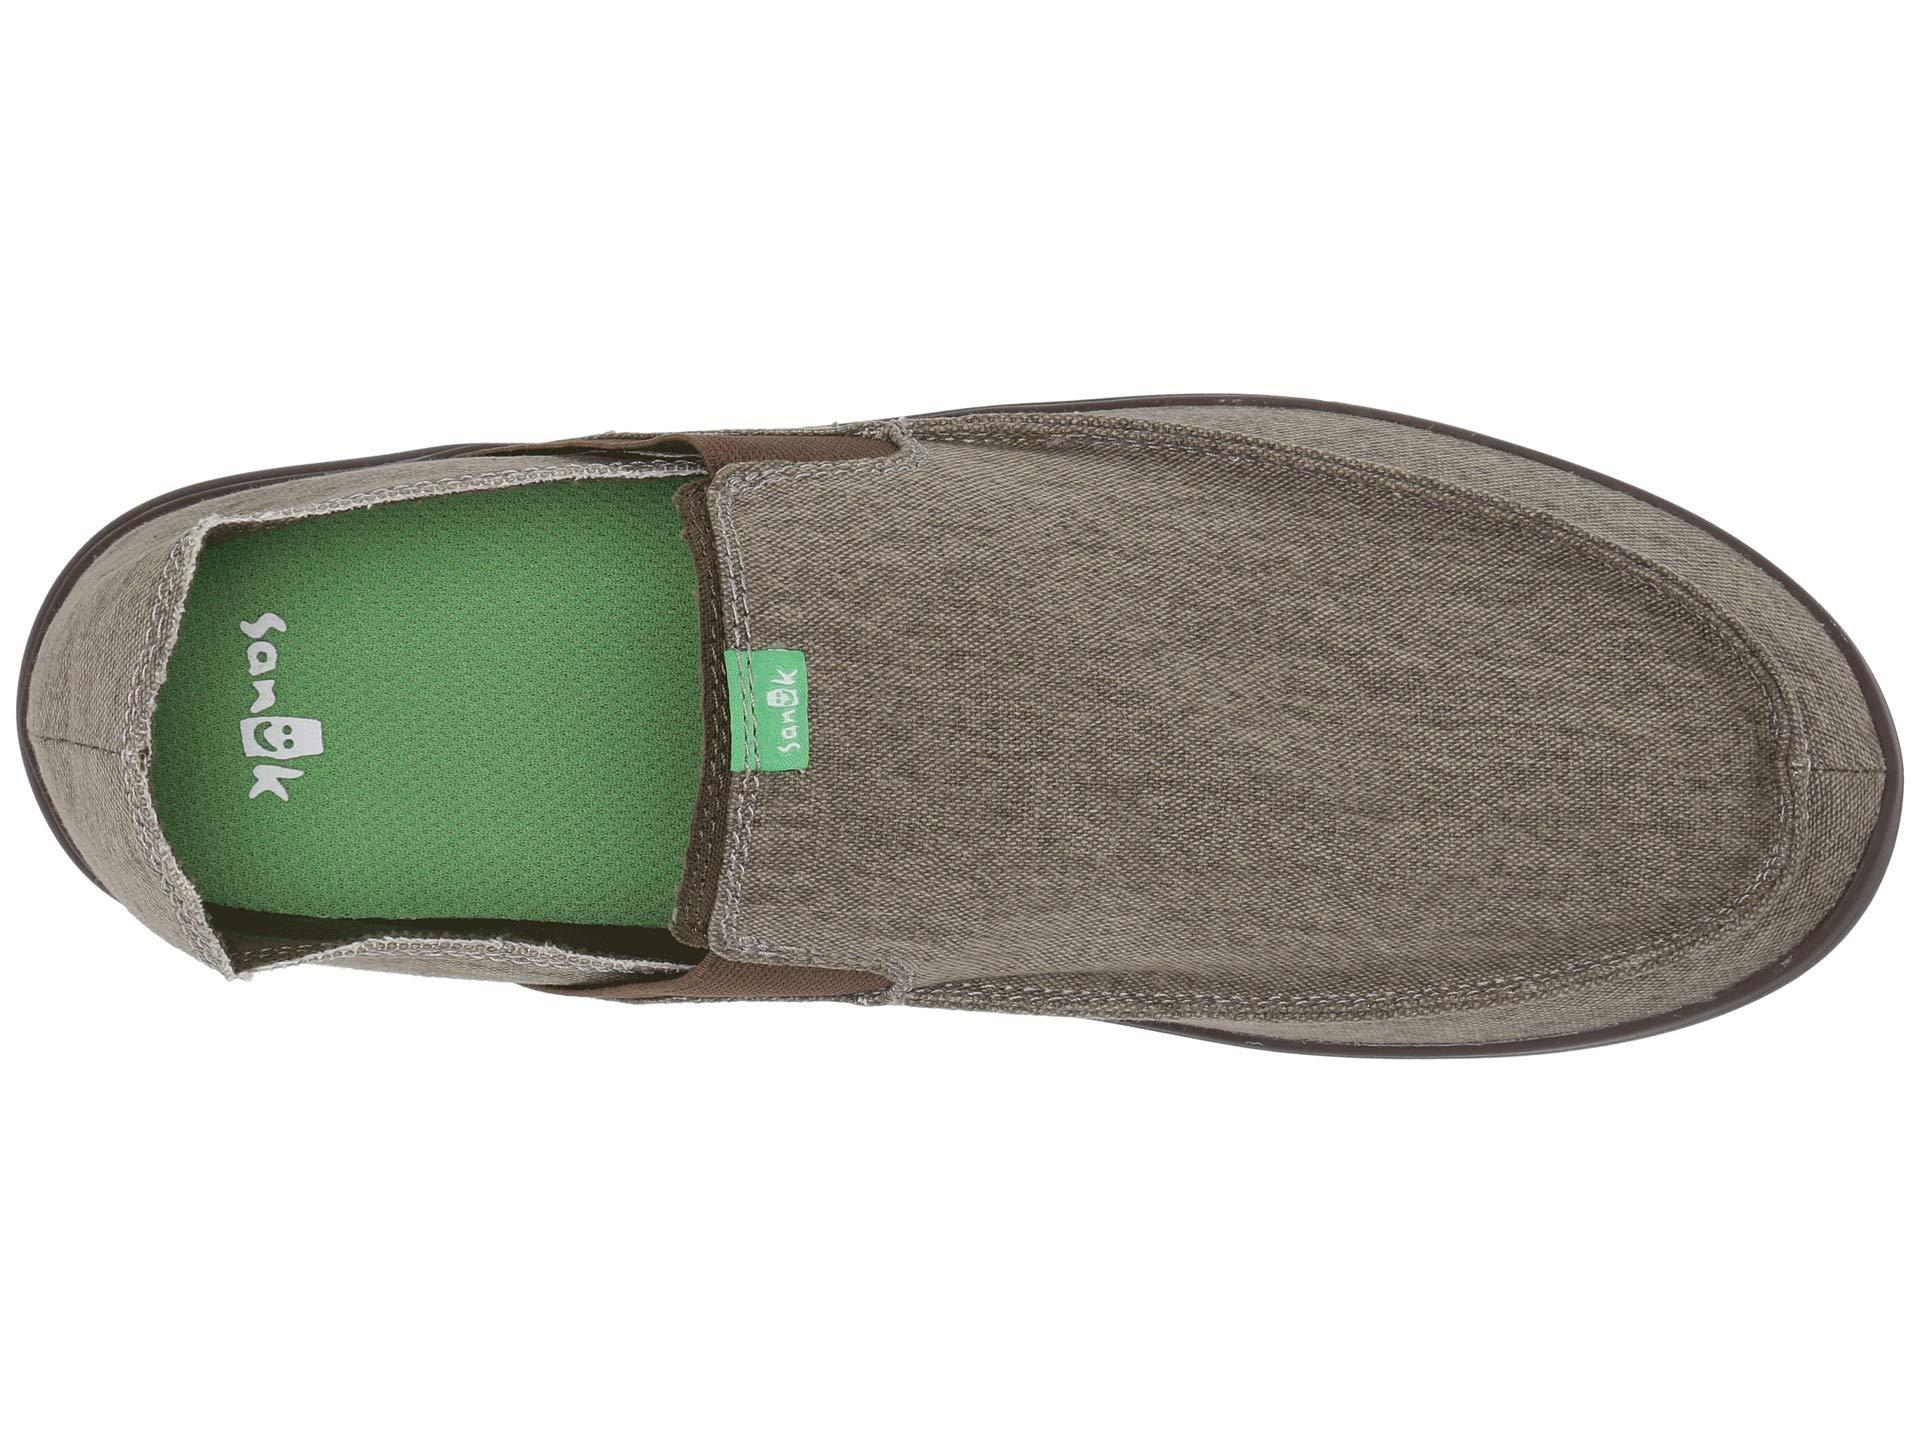 Sanuk Rubber Pick Pocket Slip-on Sneaker in Brown for Men - Lyst